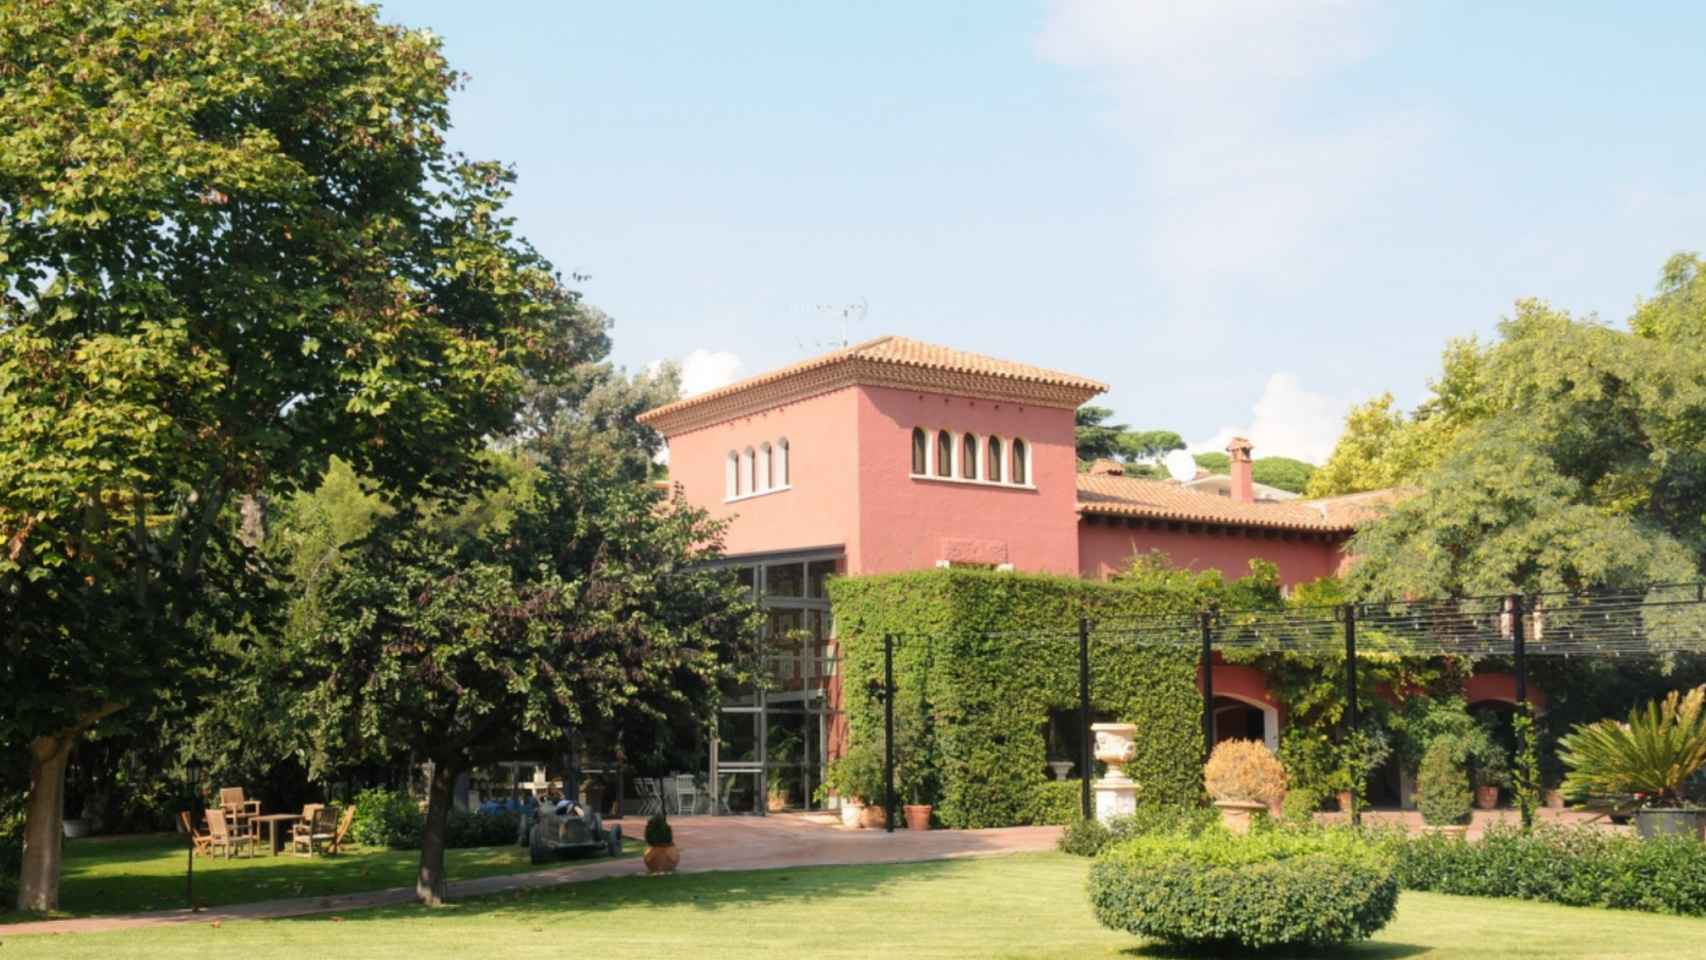 Exterior de Villa Bugatti, masía de lujo que se habría utilizado para el desvío de fondos públicos, según la Guardia Civil / VILLA BUGATTI